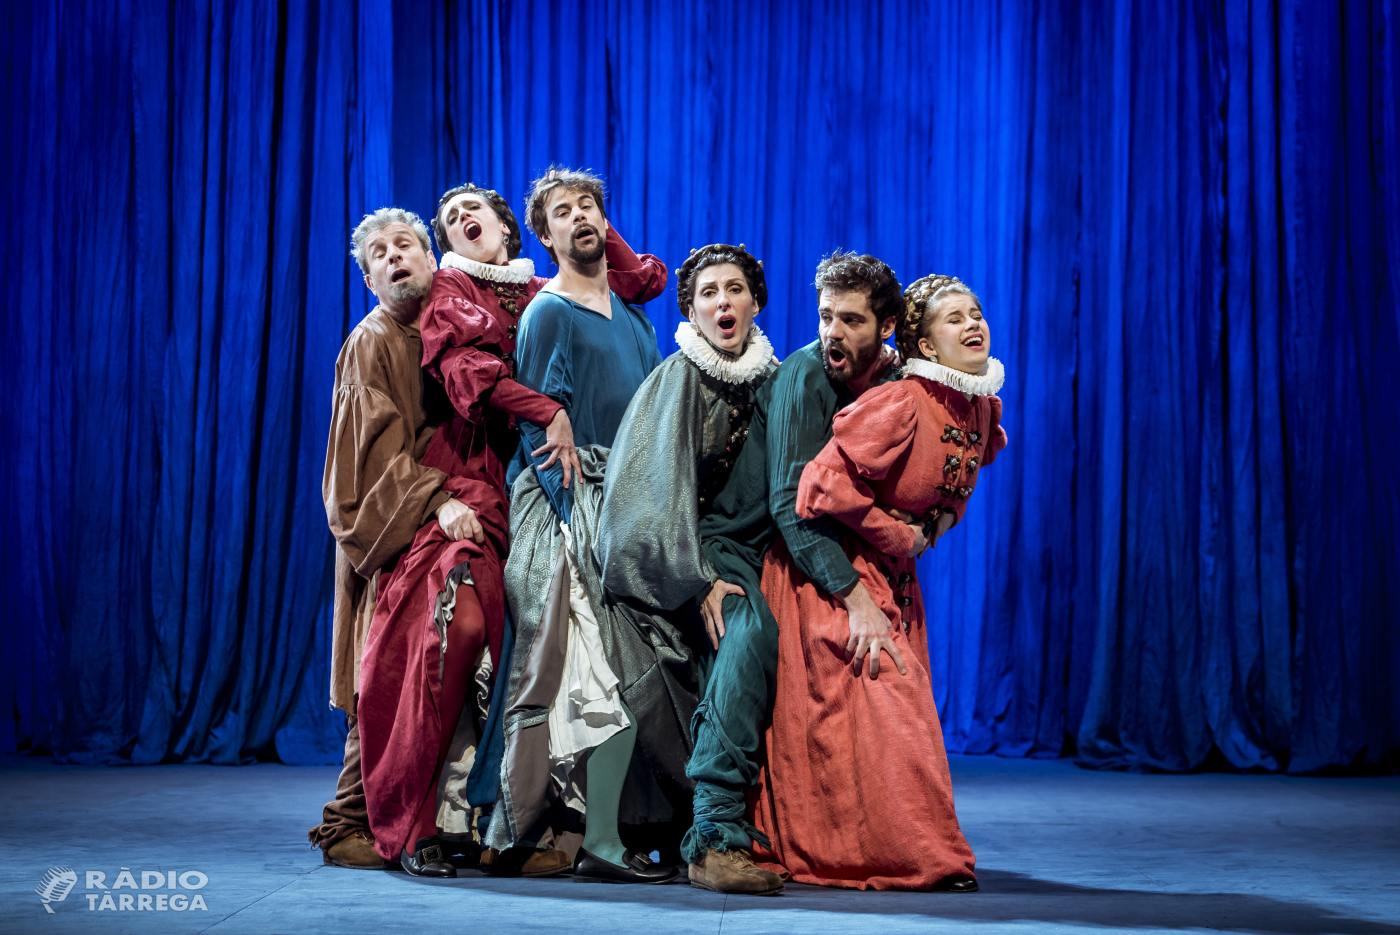 Dagoll Dagom i T de Teatre porten a Tàrrega el dissabte 26 d’octubre la coproducció La tendresa, comèdia romàntica d’inspiració shakespeariana